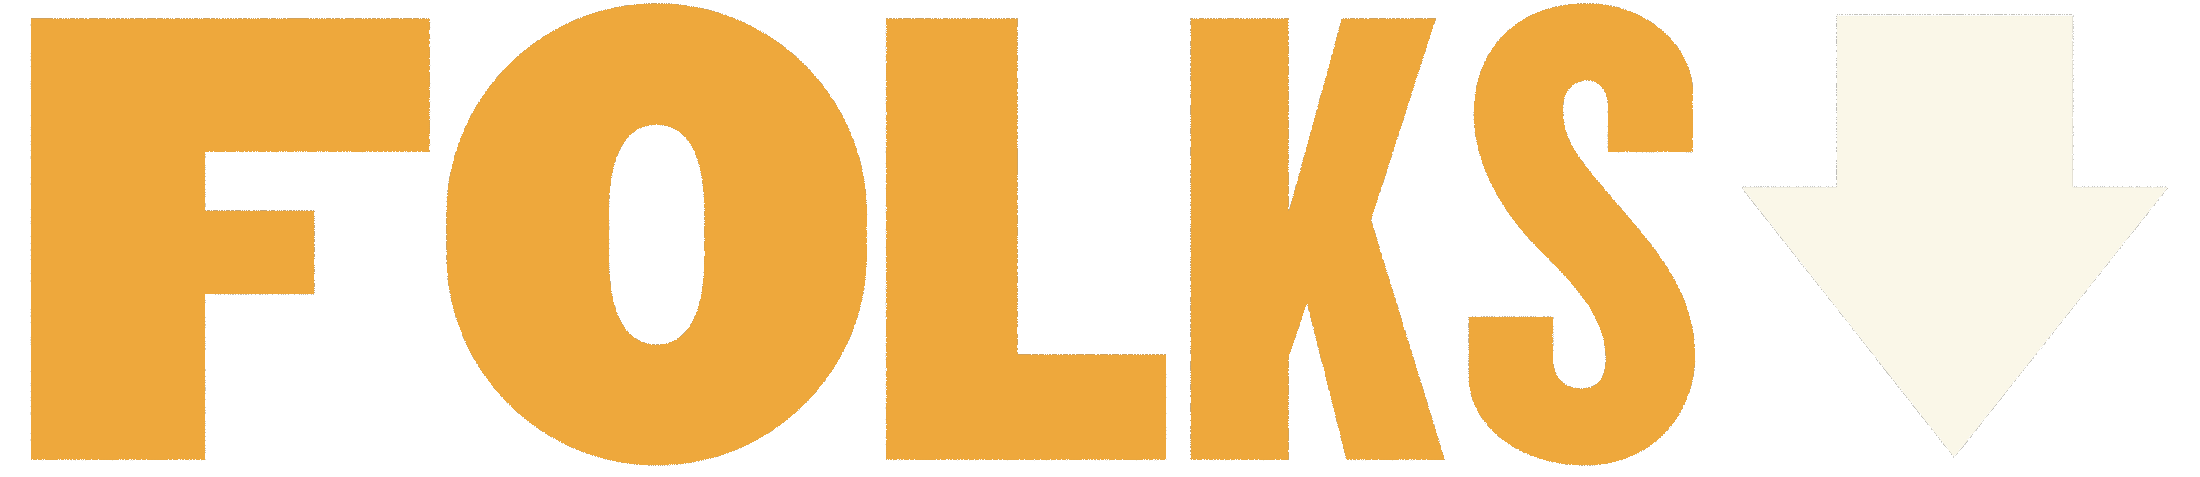 Folks-Logo-Landing-v3-2